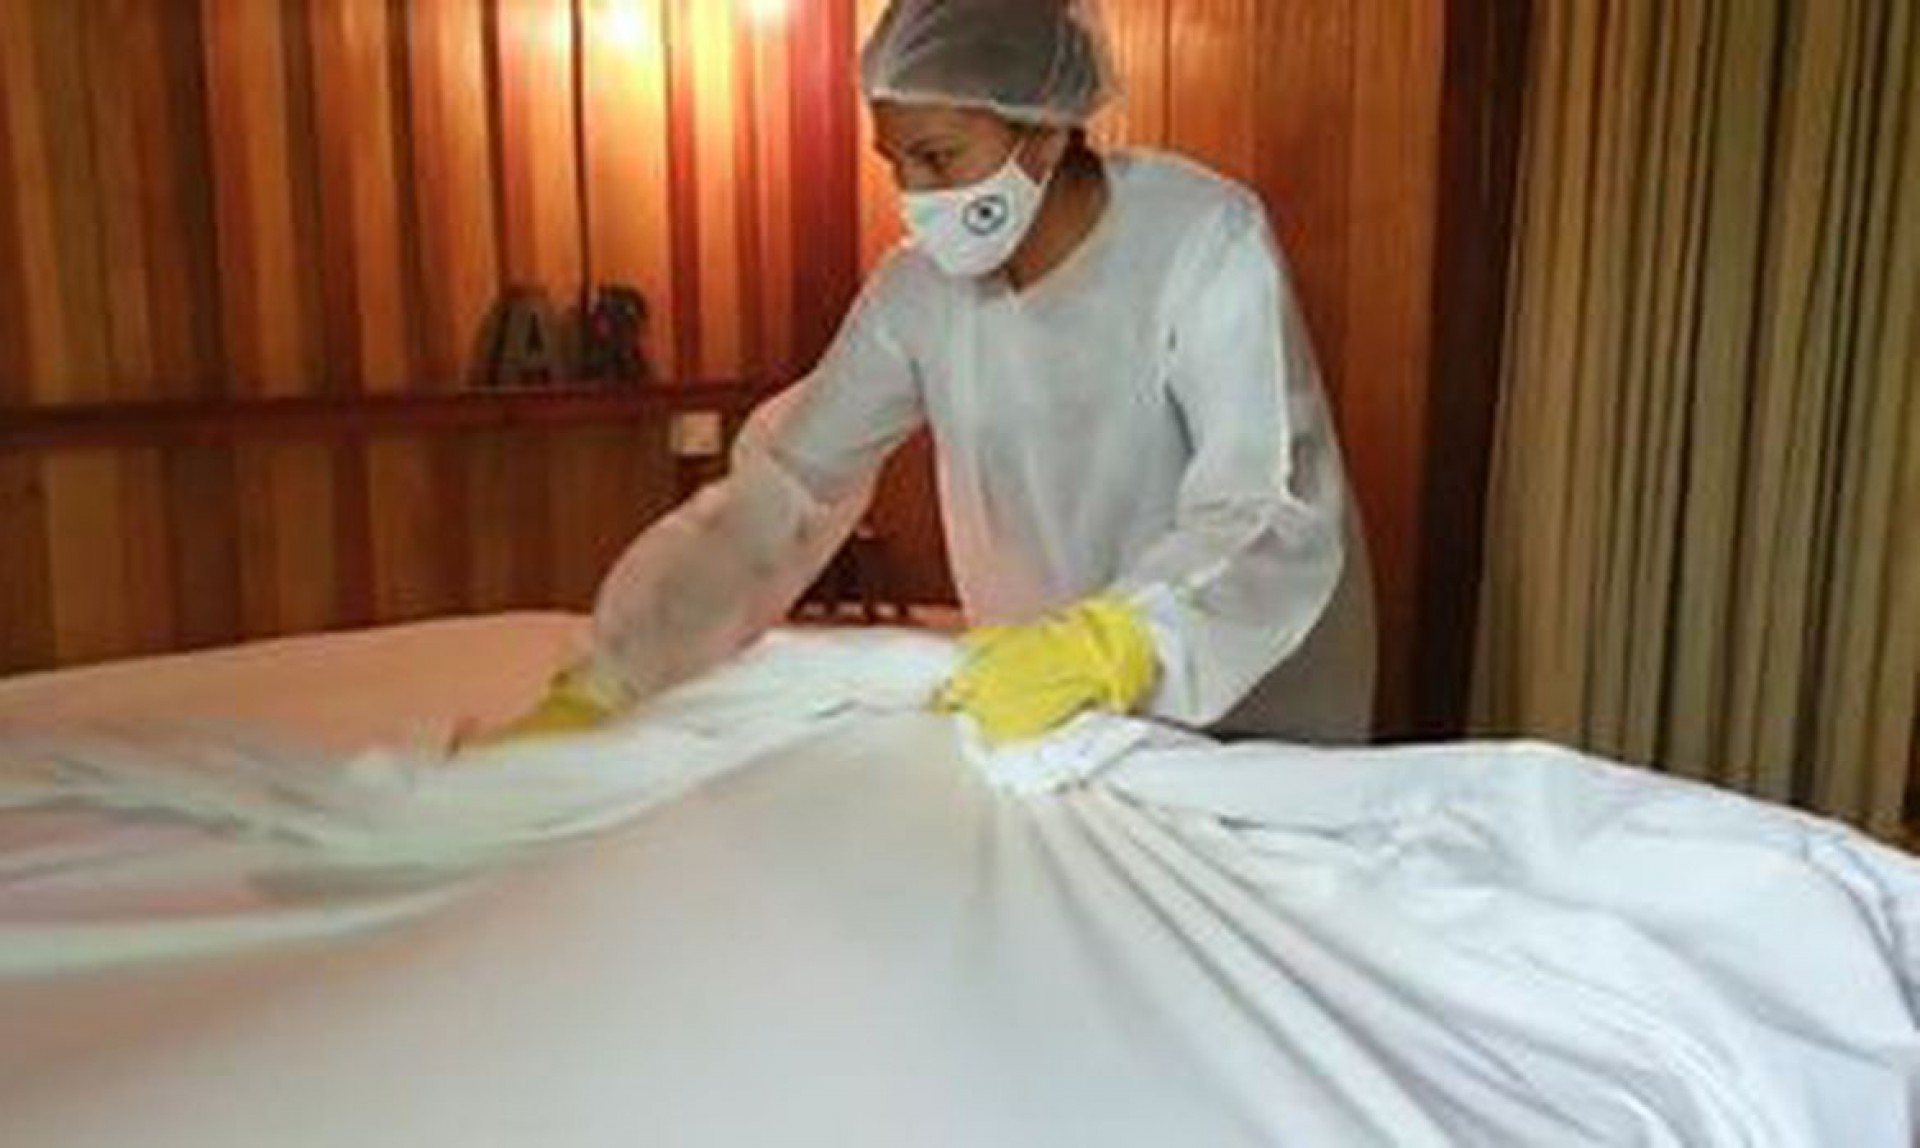 Camareira de hotel faz a higienização contra covid-19 (Foto: Divulgação/TV Brasil)